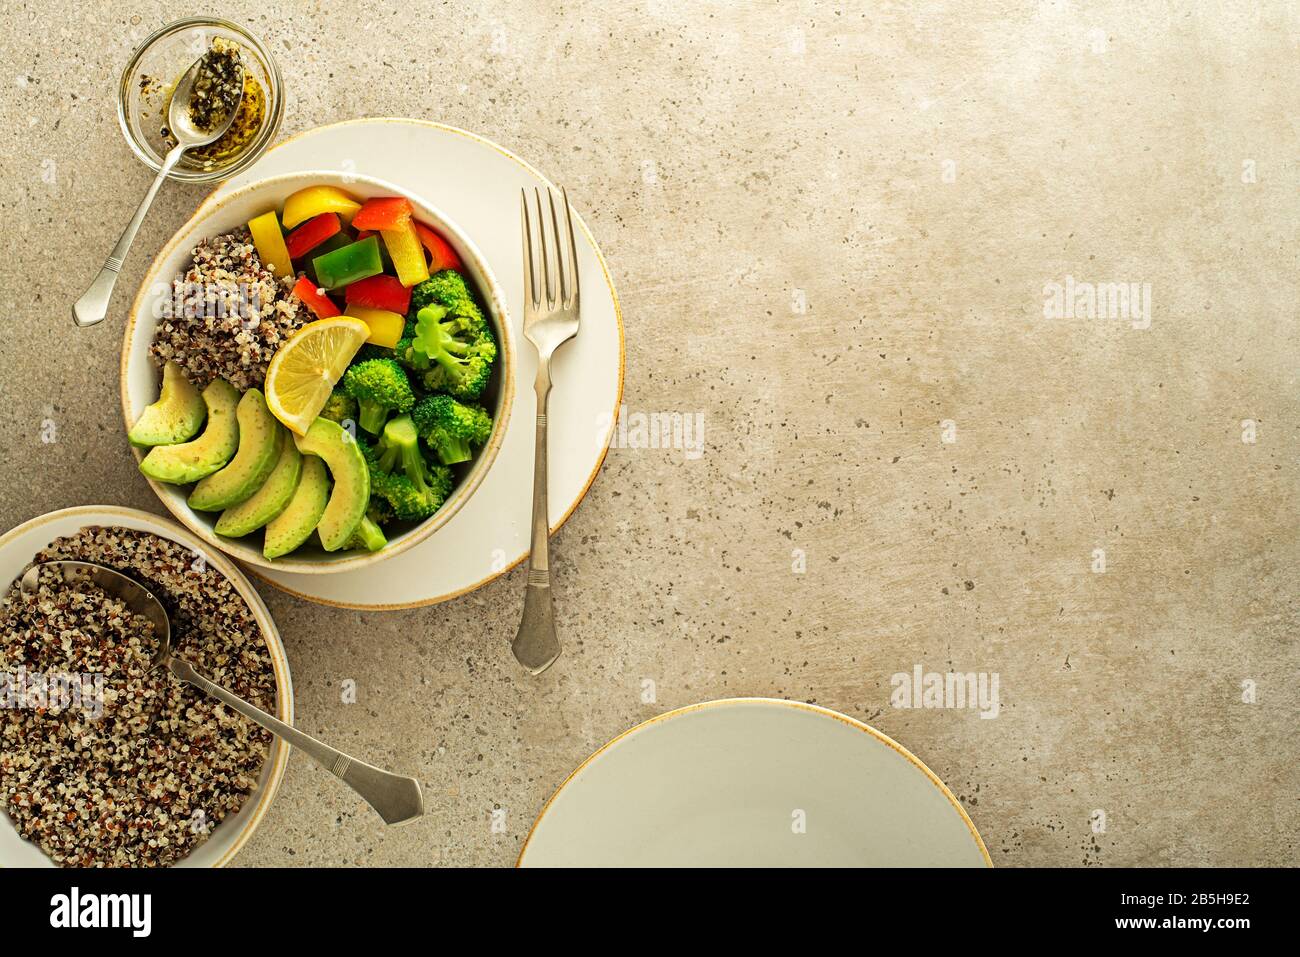 Repas de salade sain avec quinoa, avocat et légumes frais mélangés sur fond gris vue de dessus. Alimentation et santé. Concept de repas sain Banque D'Images